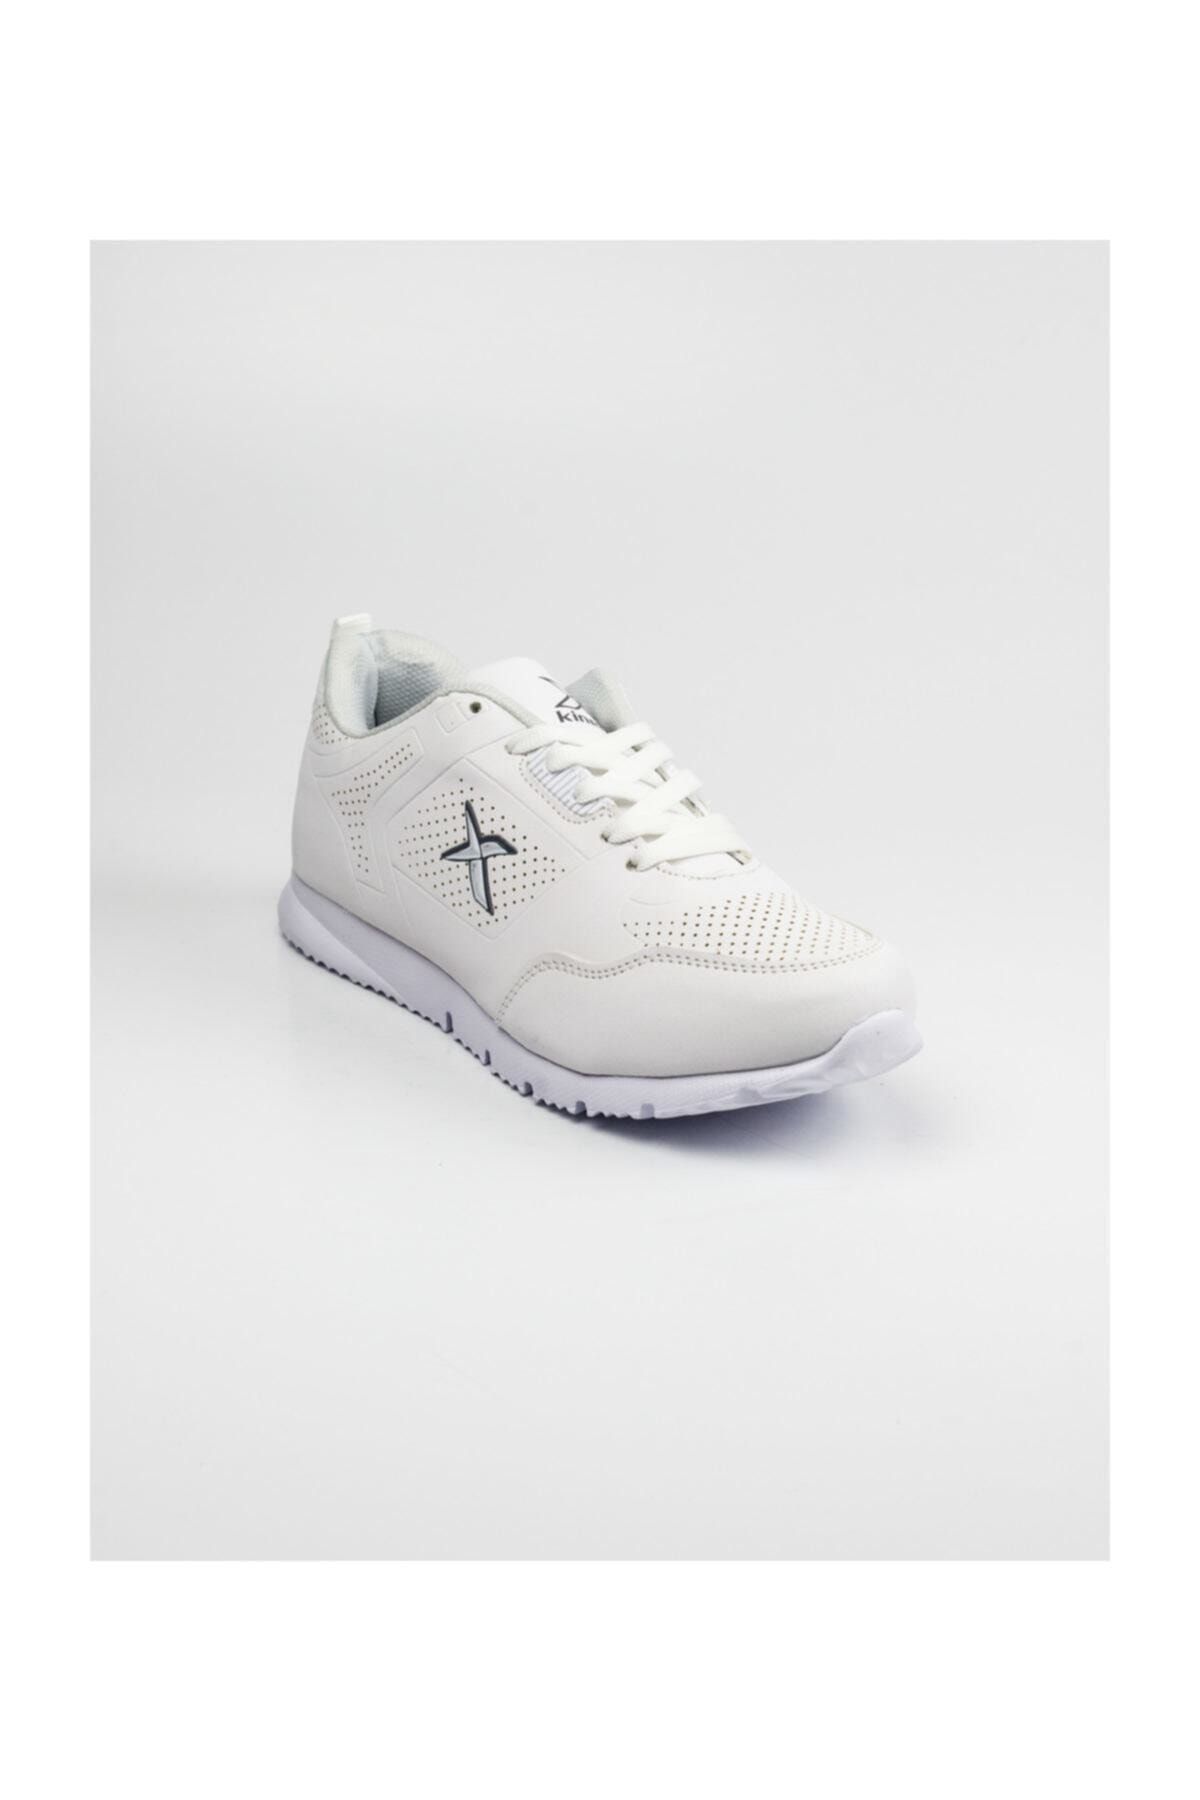 Kinetix Lora M 9pr Beyaz Erkek Sneaker Ayakkabı